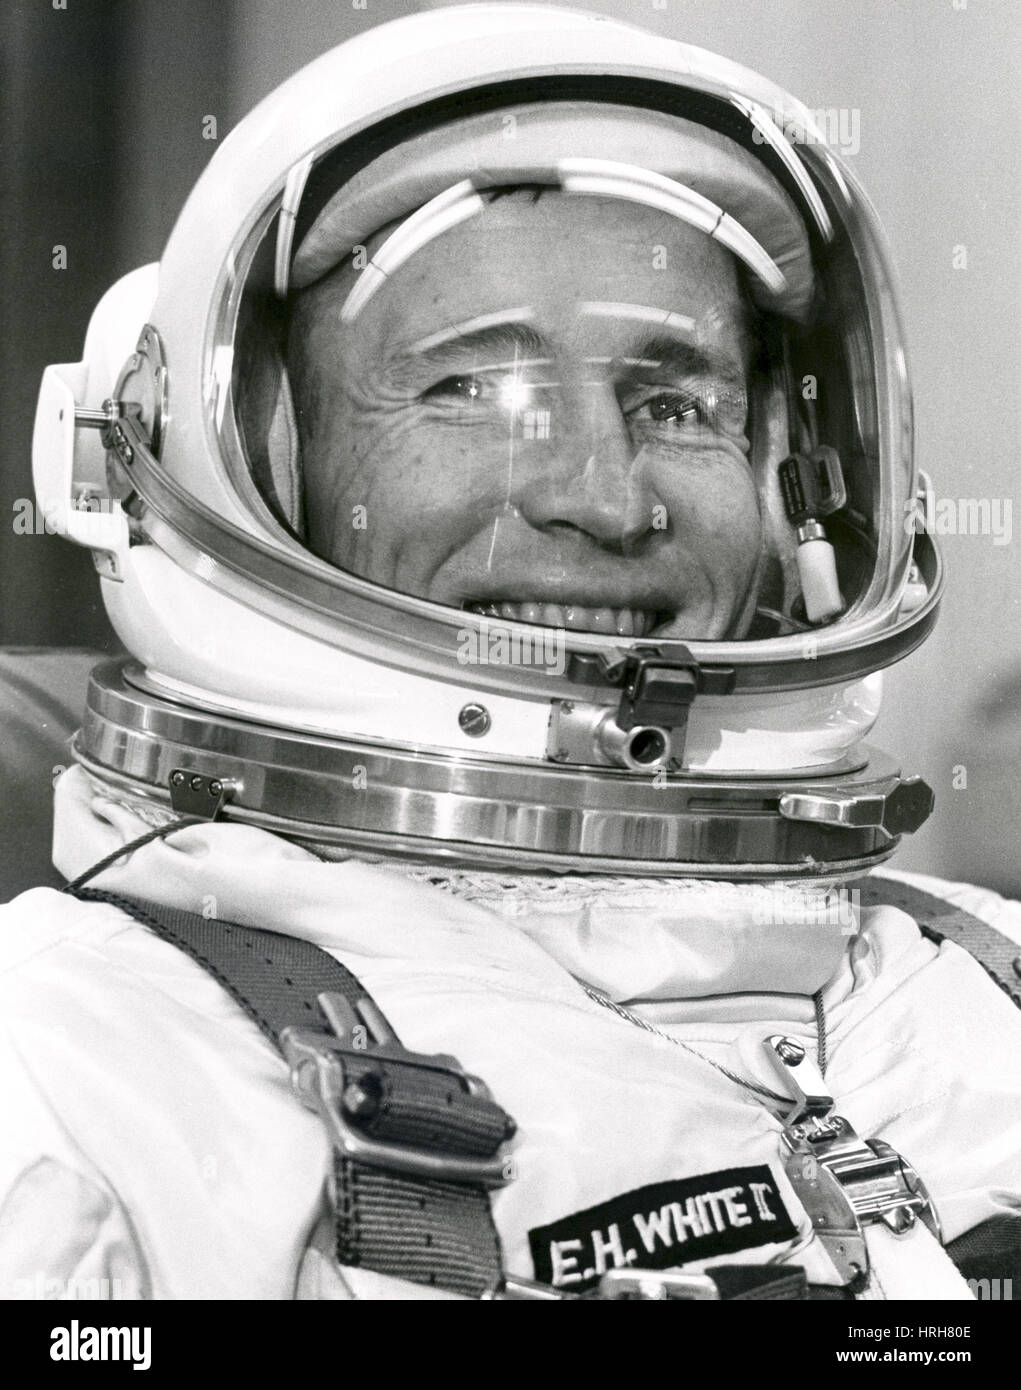 Astronaut helmet immagini e fotografie stock ad alta risoluzione - Alamy